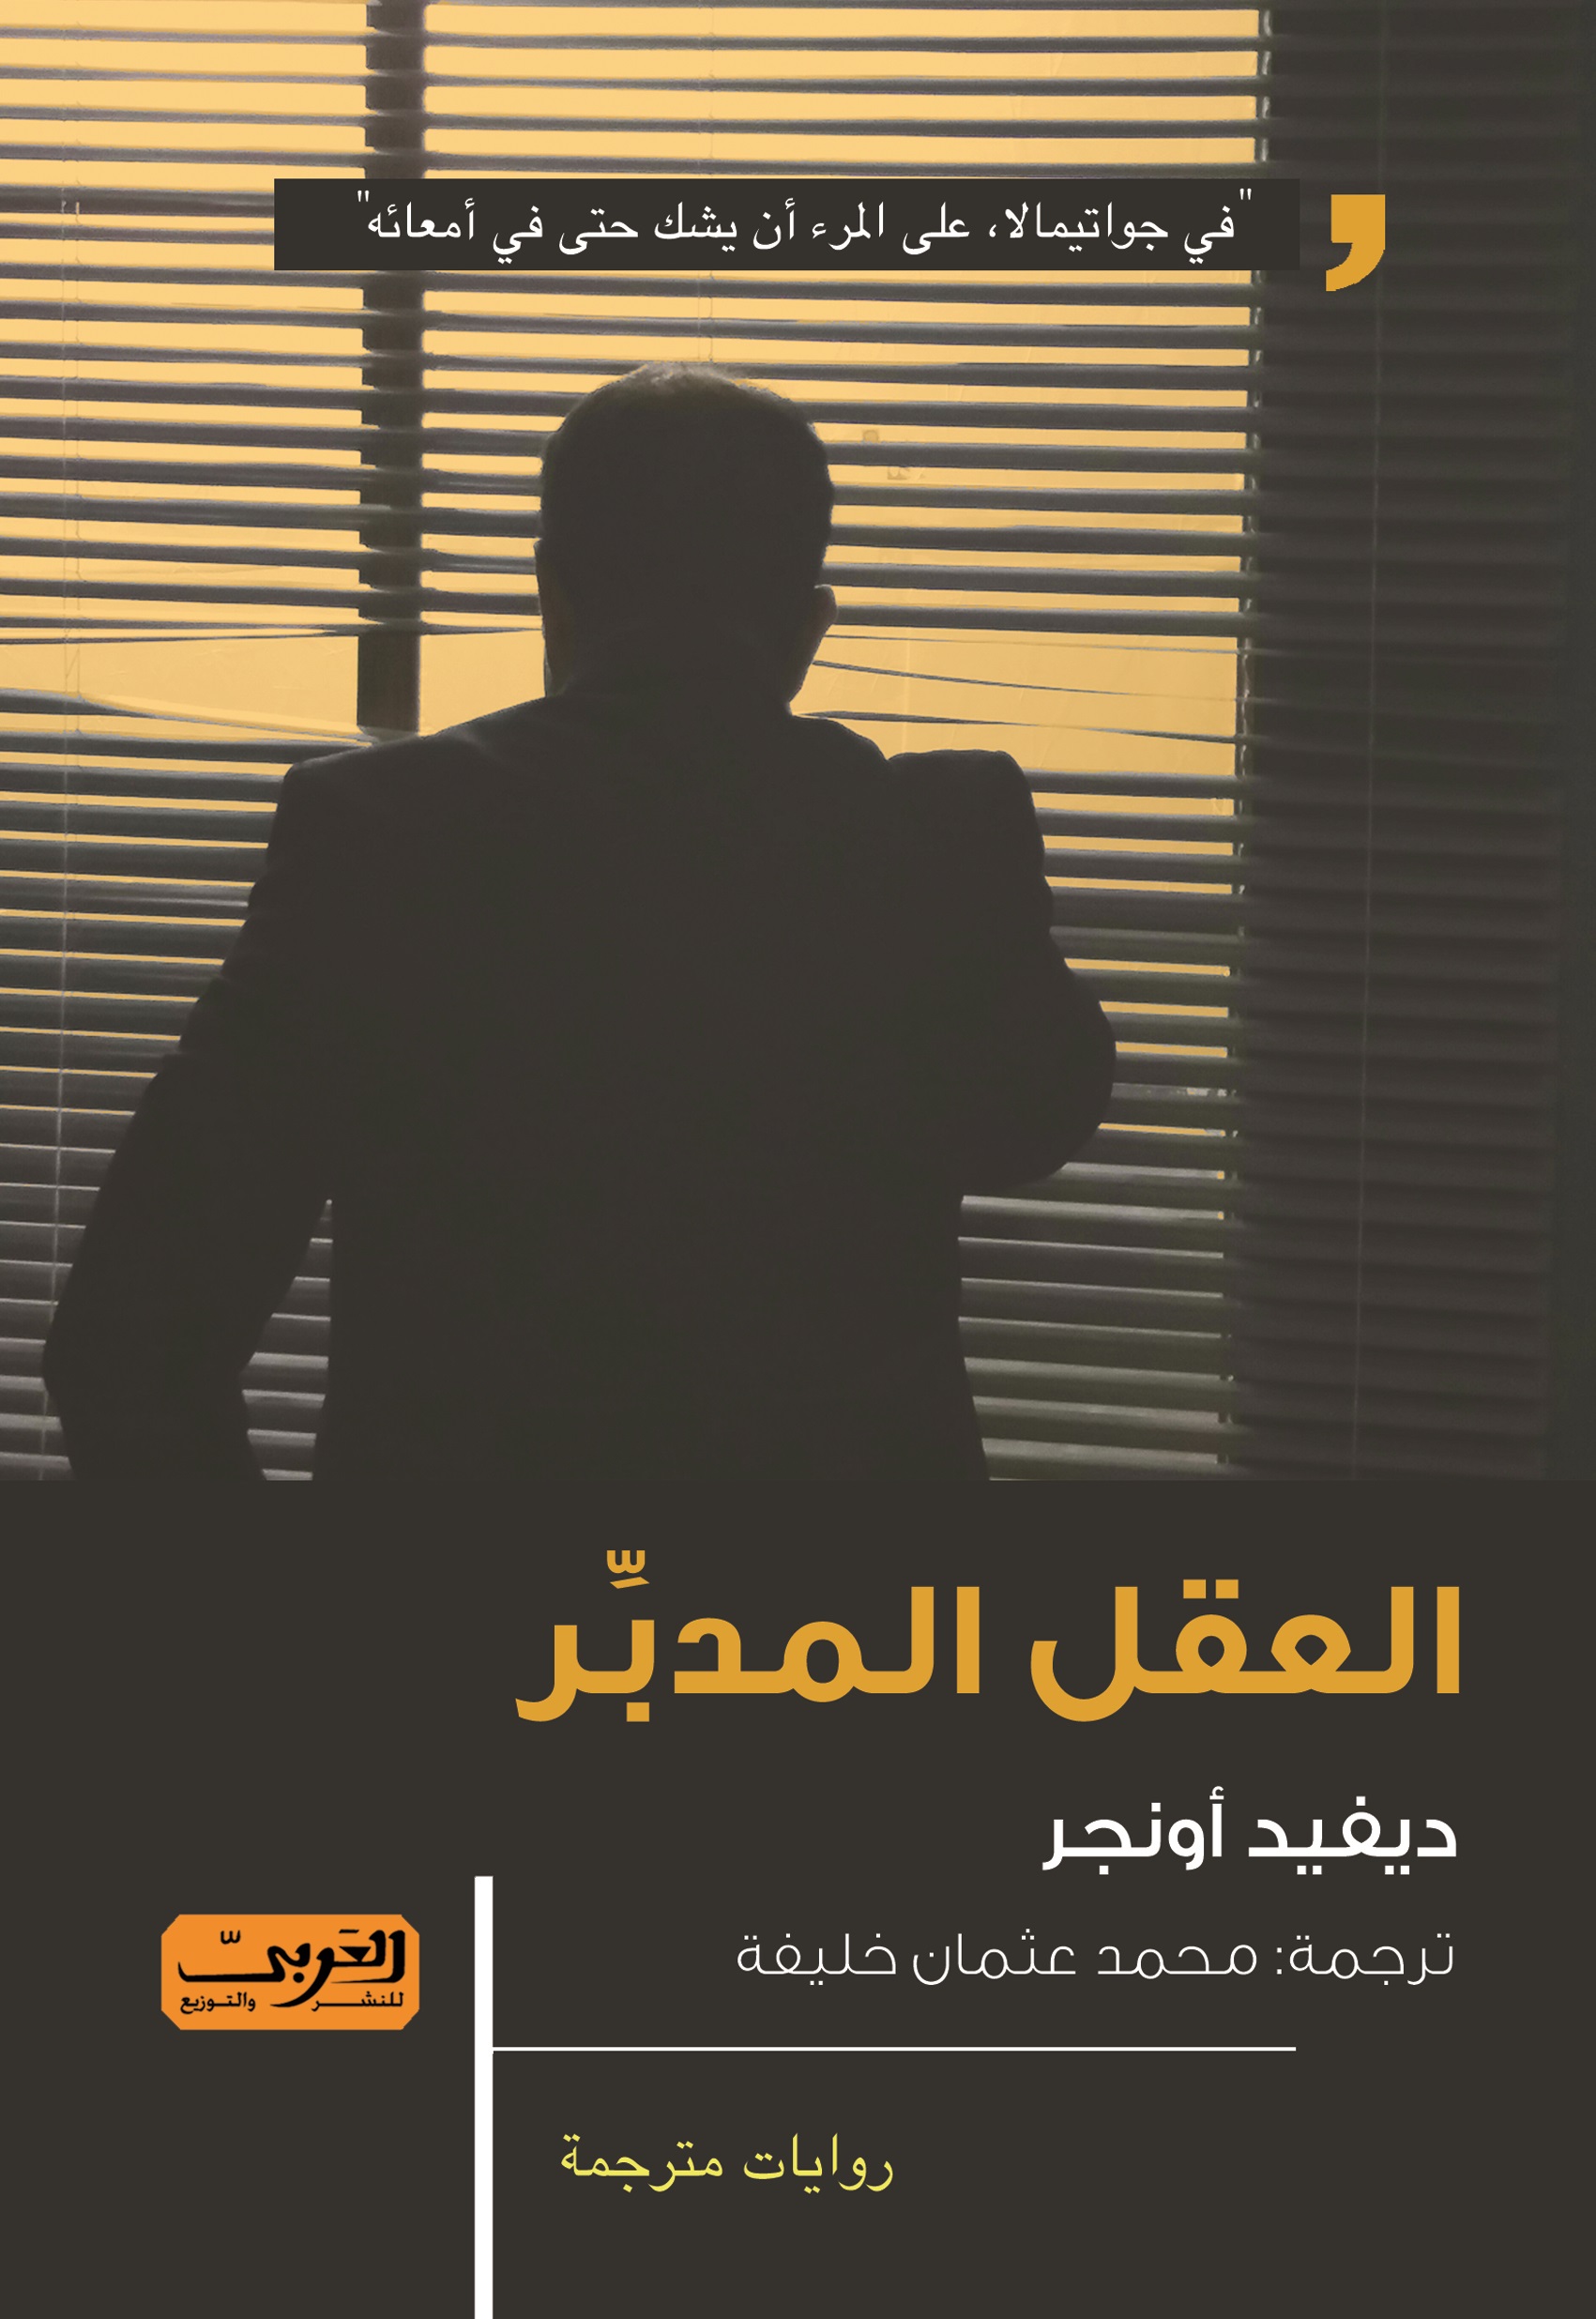 غلاف رواية العقل المدبر في نسختها العربية عن دار العربي للنشر